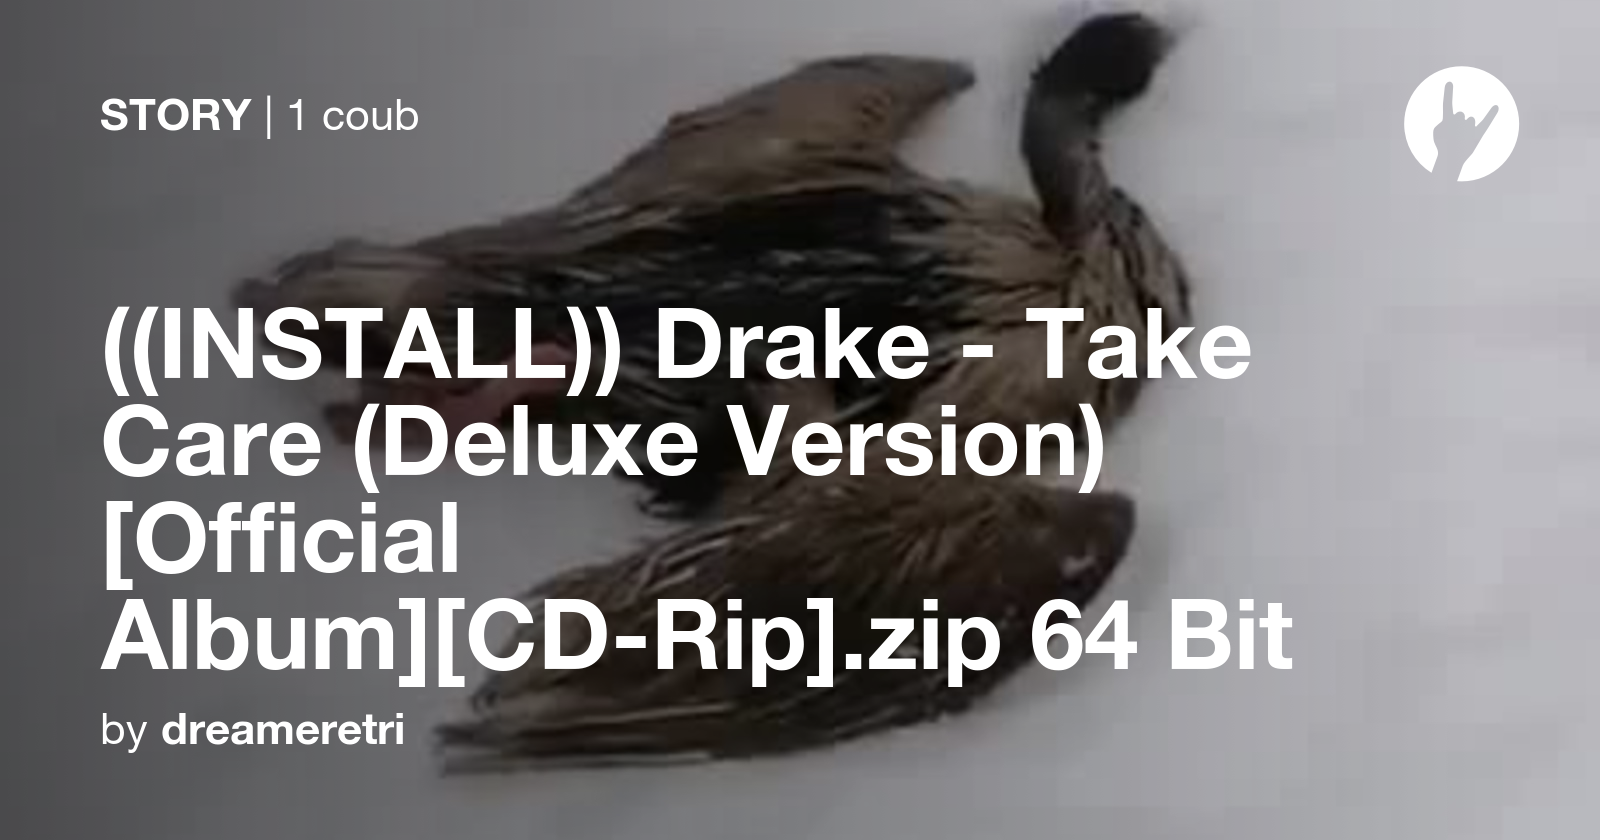 drake take care album download free zip